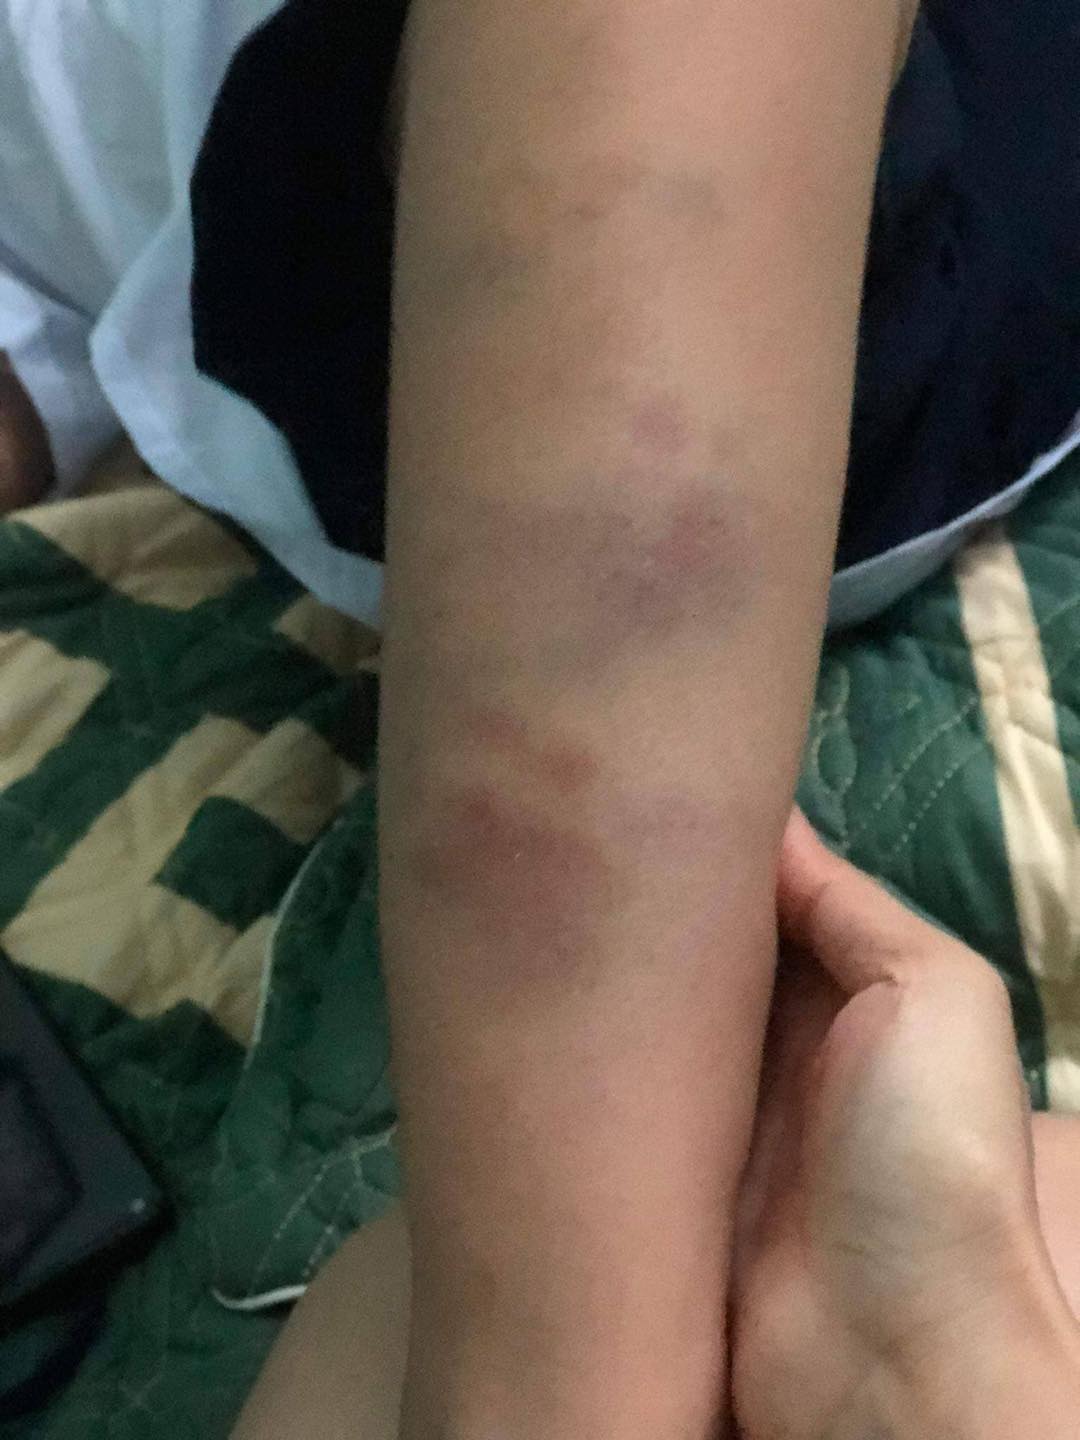 Đà Nẵng: Học sinh lớp 1 đi học về bị bầm tím tay chân do bạn đánh